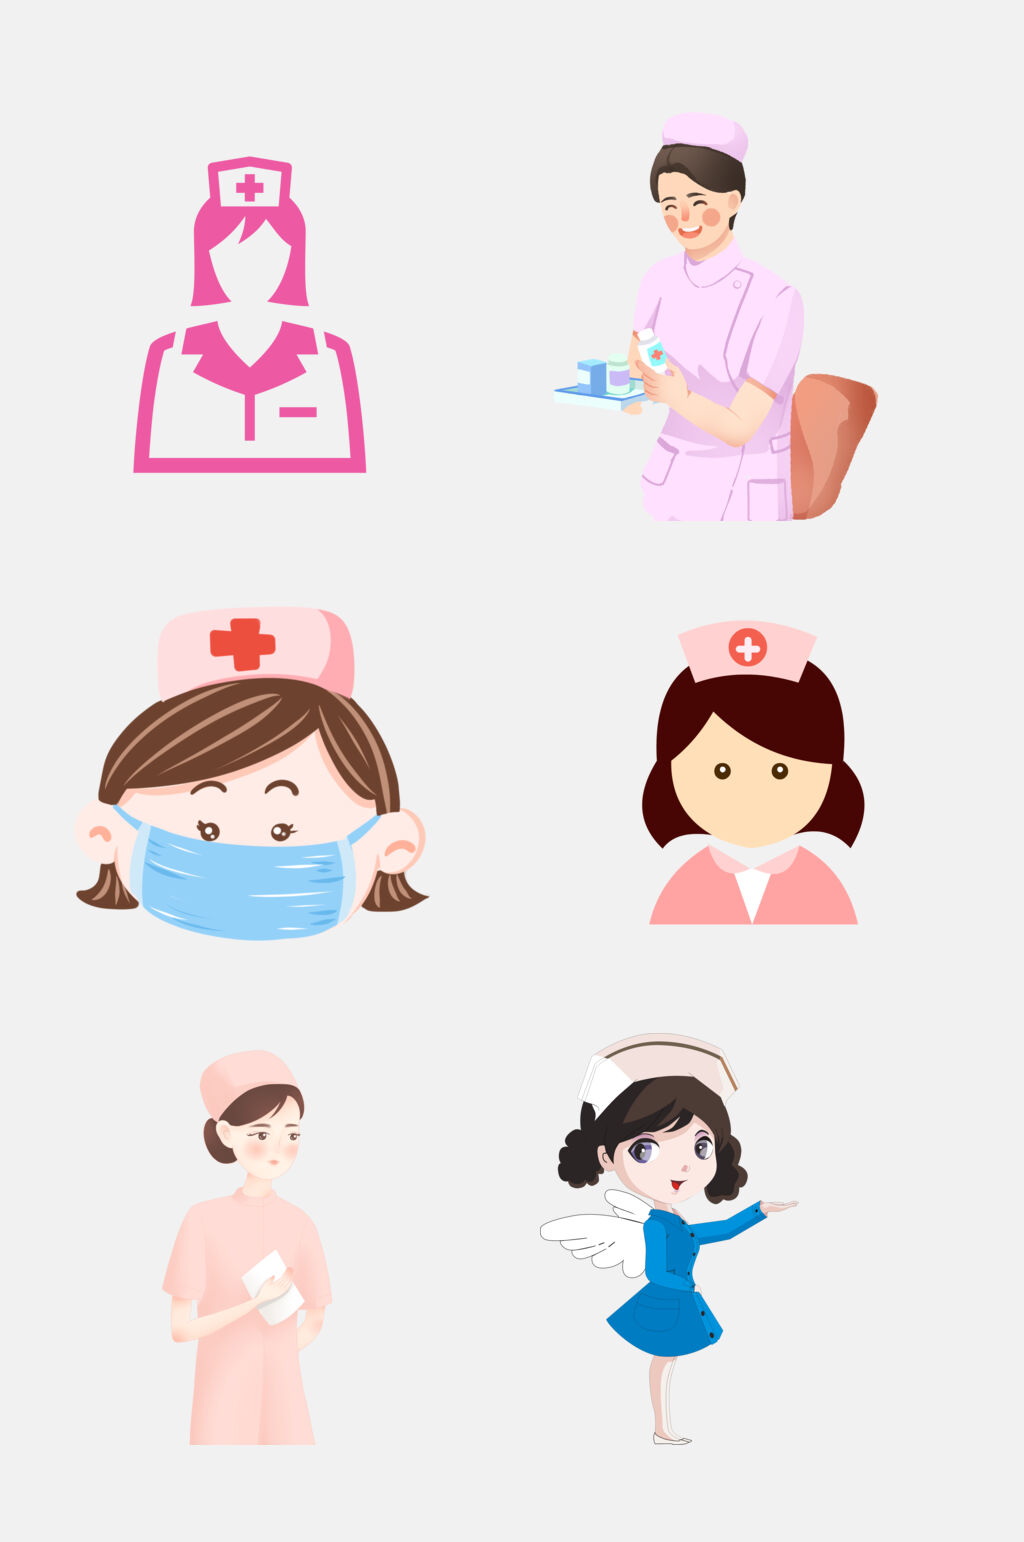 众图网独家提供粉色时尚白衣天使医生护士免抠素材素材免费下载,本